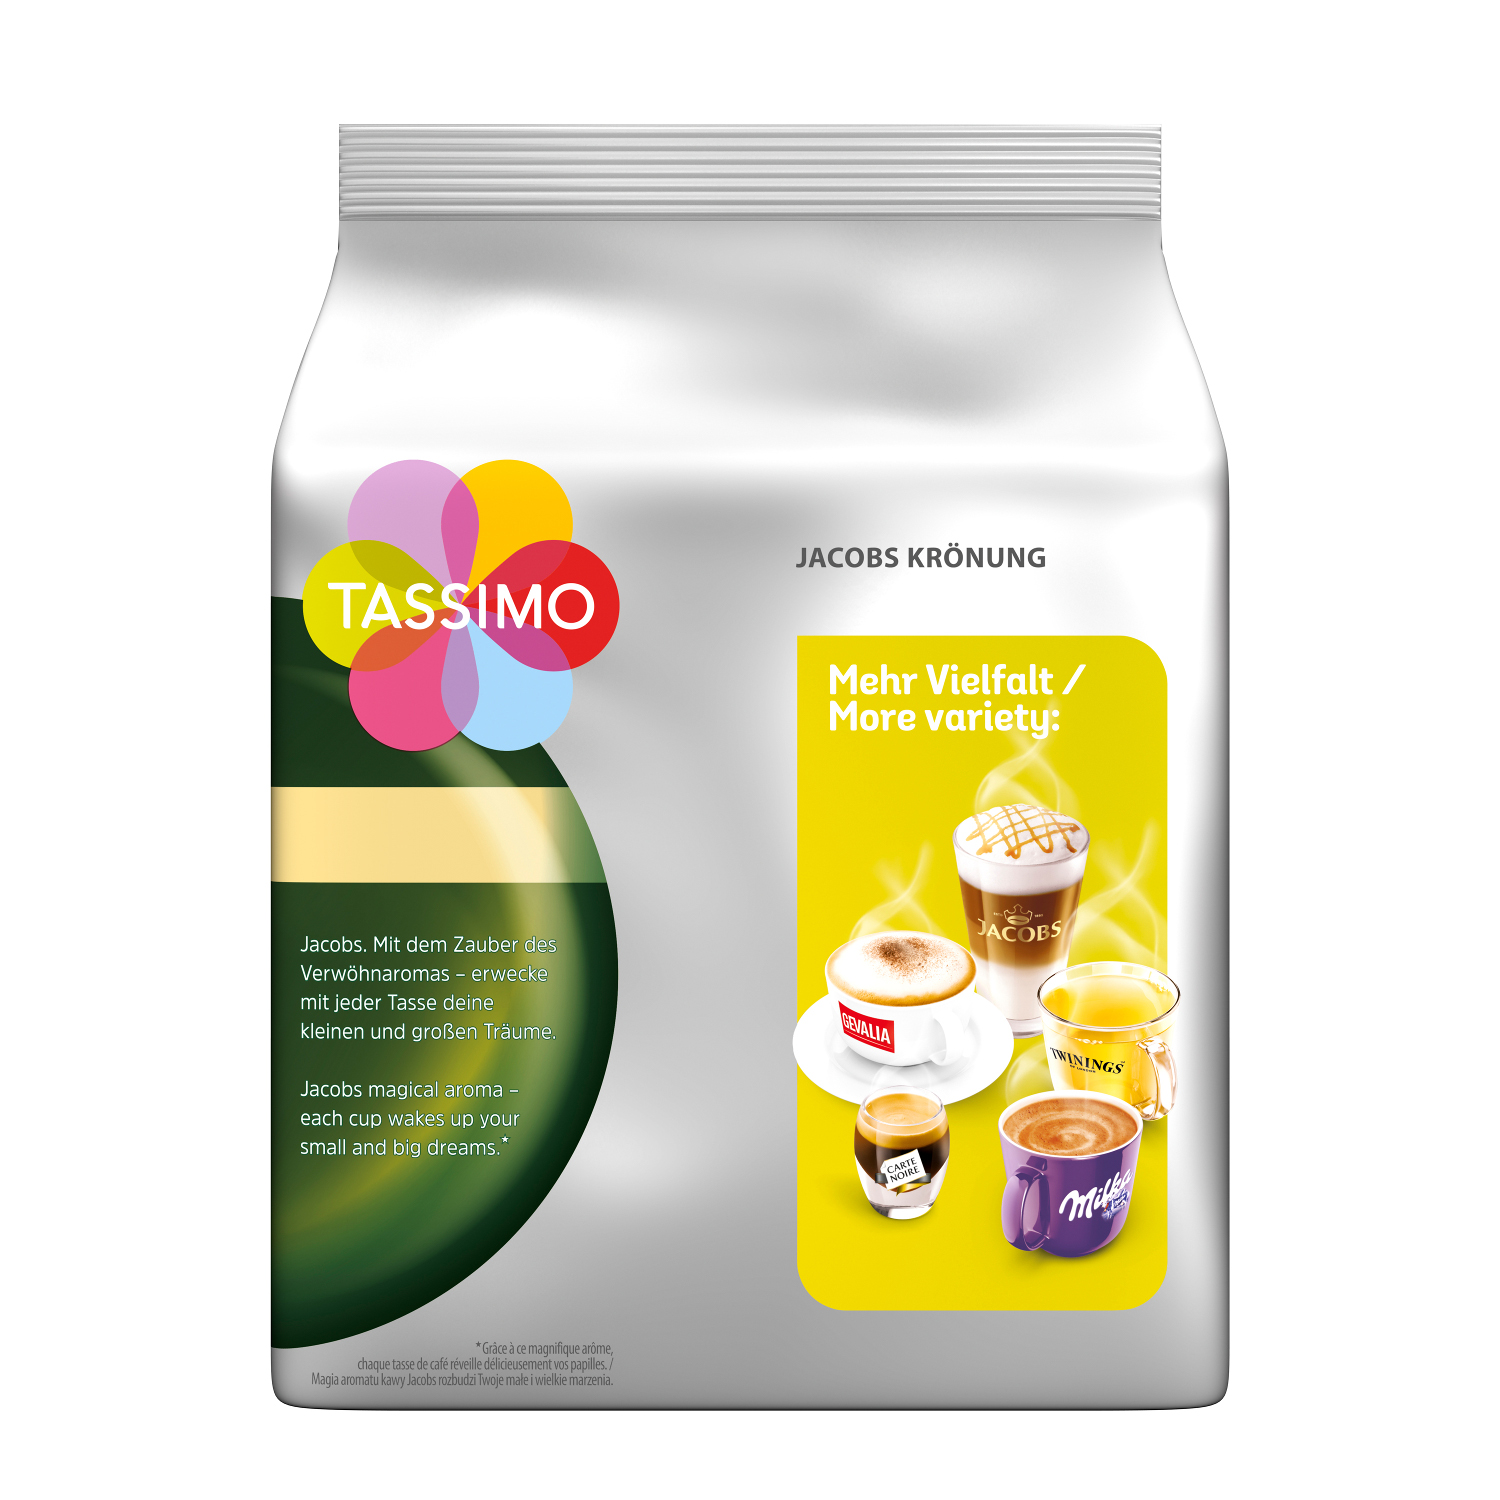 TASSIMO Vielfaltspaket XL Maschine Morning Krönung 5 Intenso Crema Sorten Café Kaffeekapseln Mild (T-Disc System)) Becherportionen (Tassimo